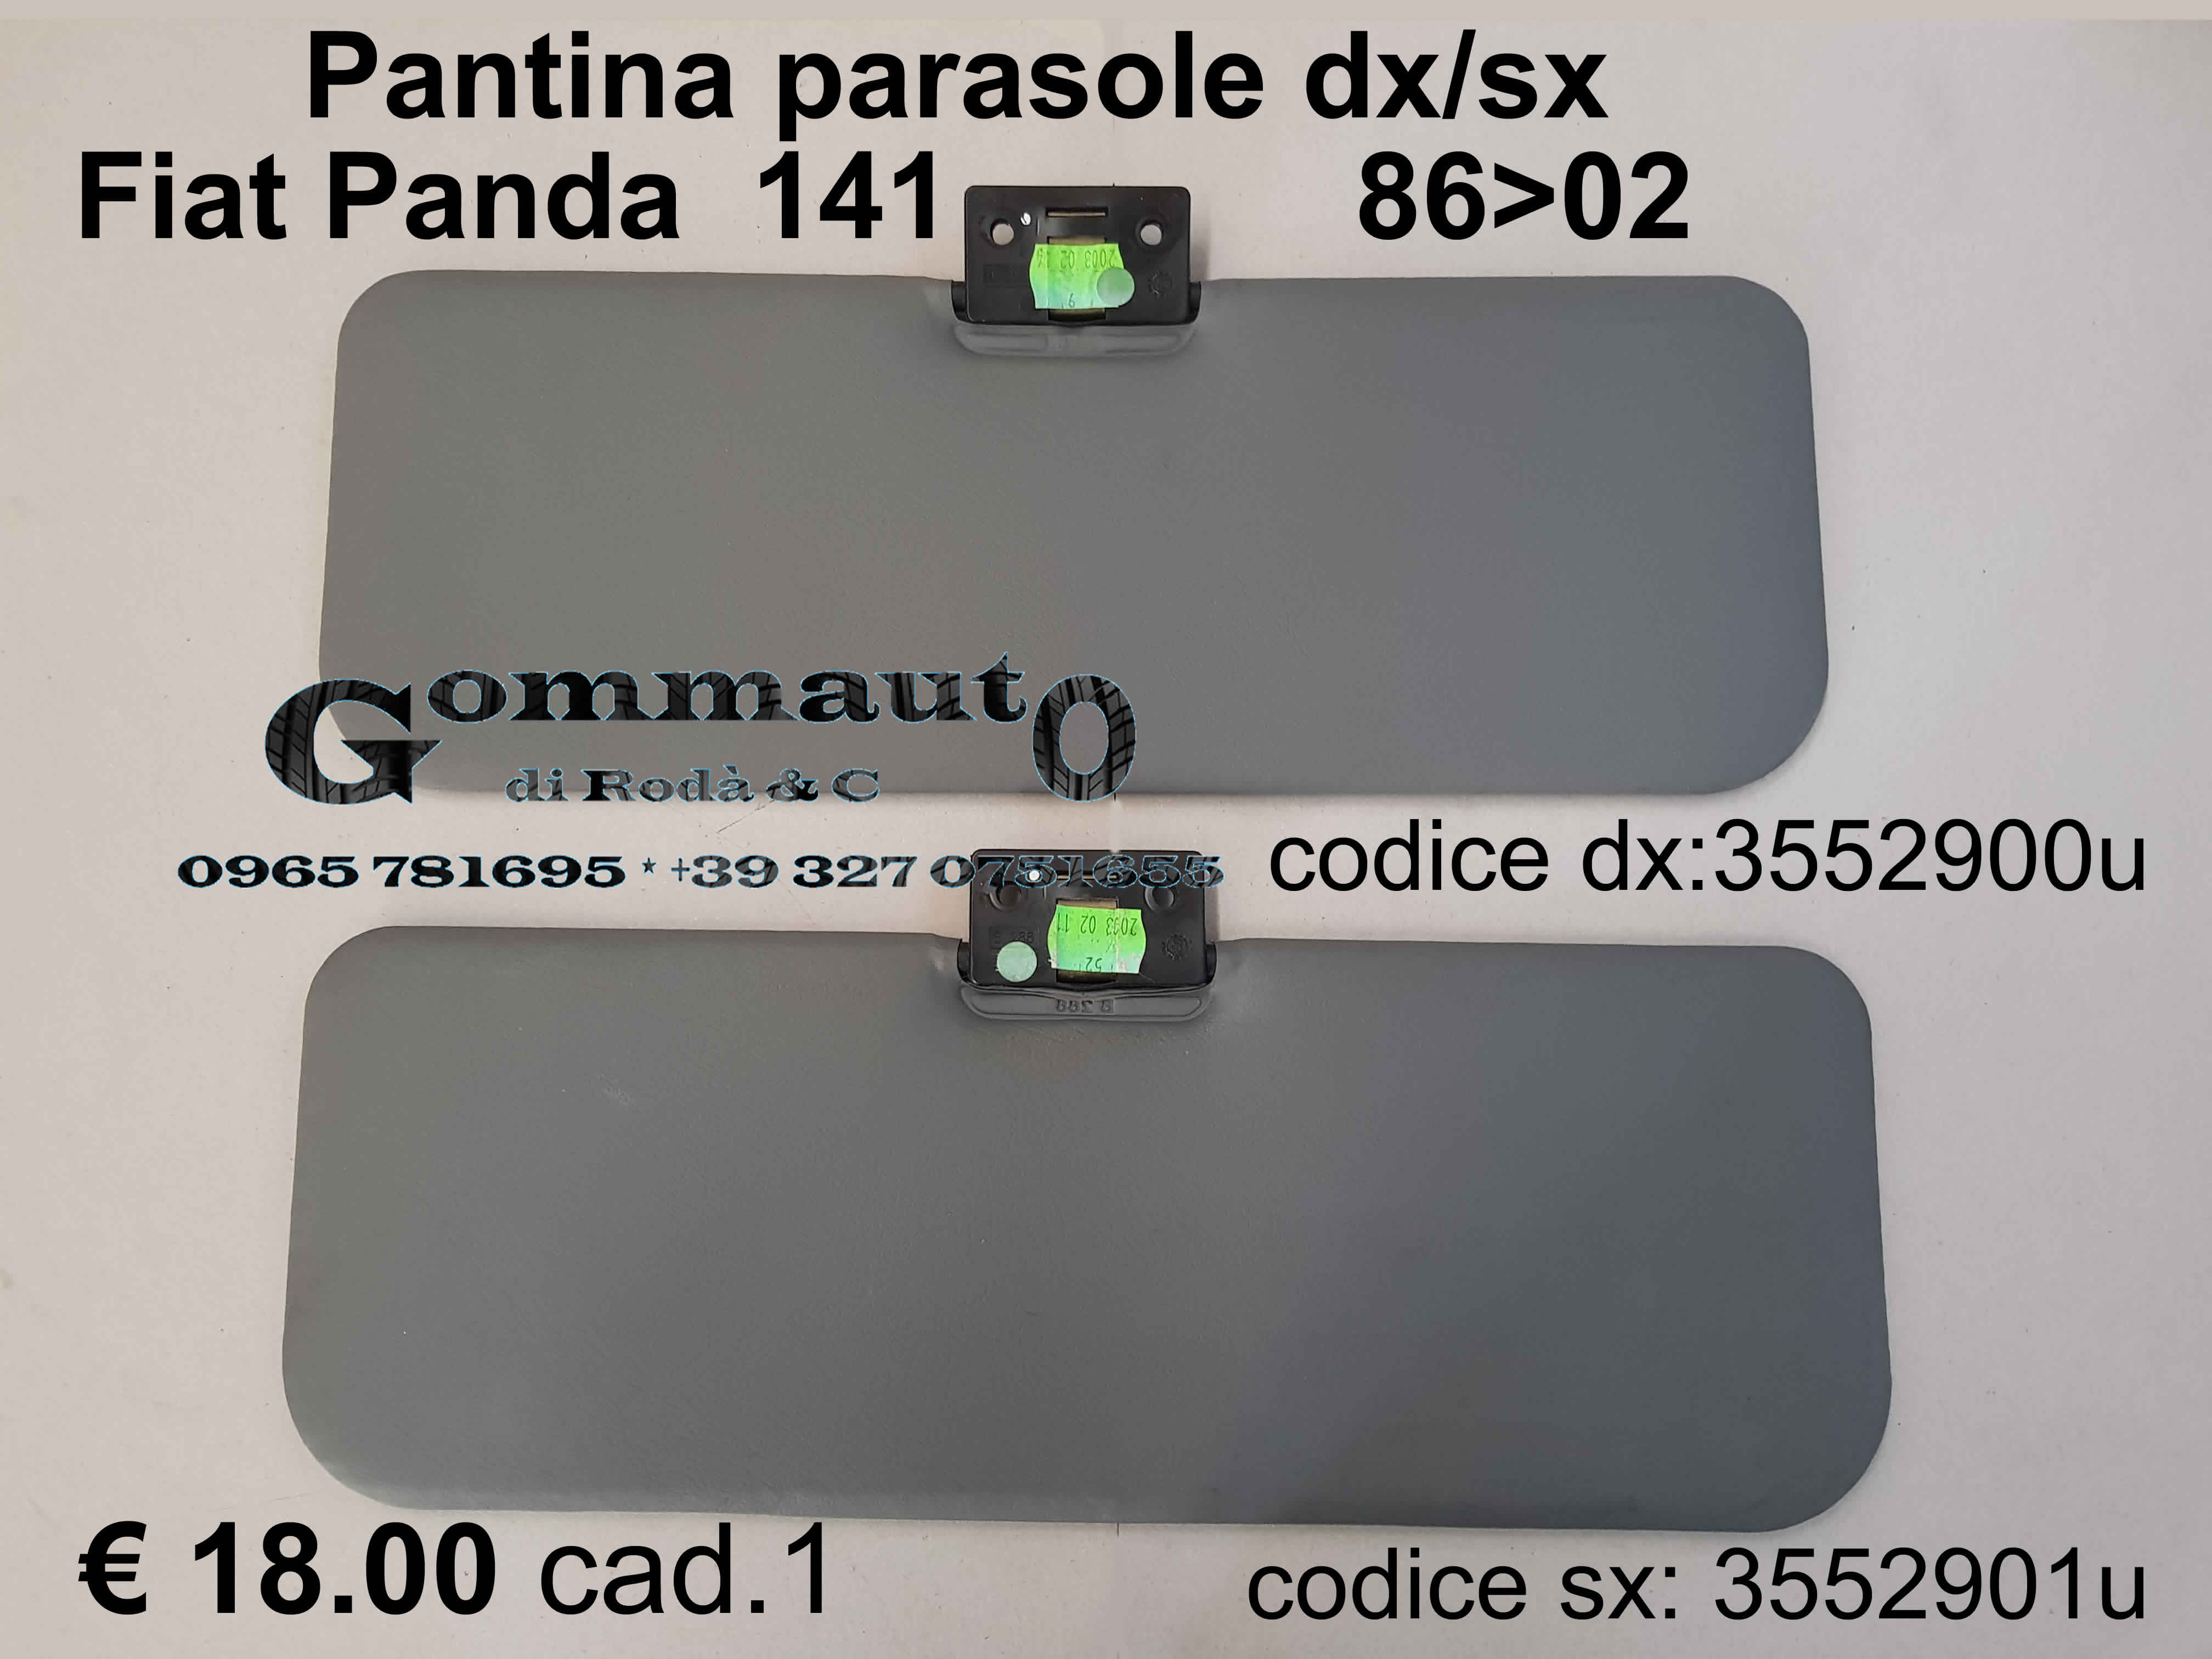 Pantina parasole Fiat Panda 141 86>02